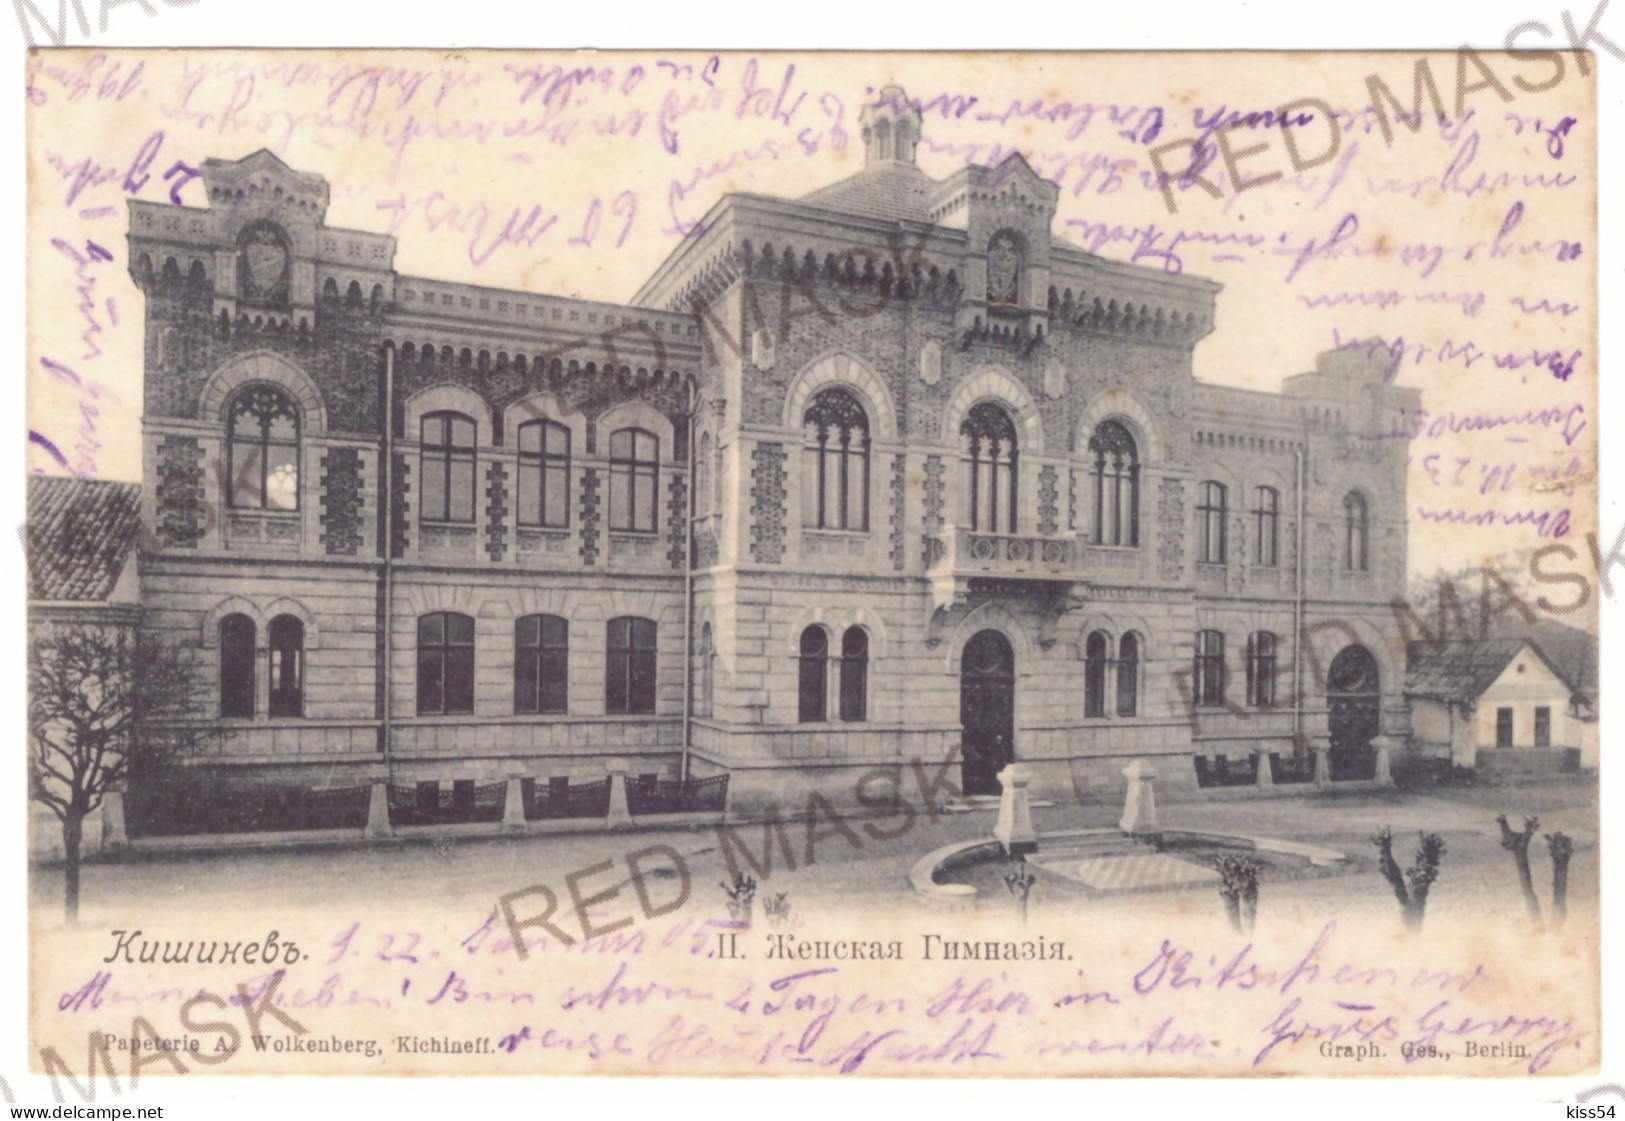 MOL 1 - 20109 CHISINAU, Moldova - Old Postcard - Used - 1905 - Moldavië